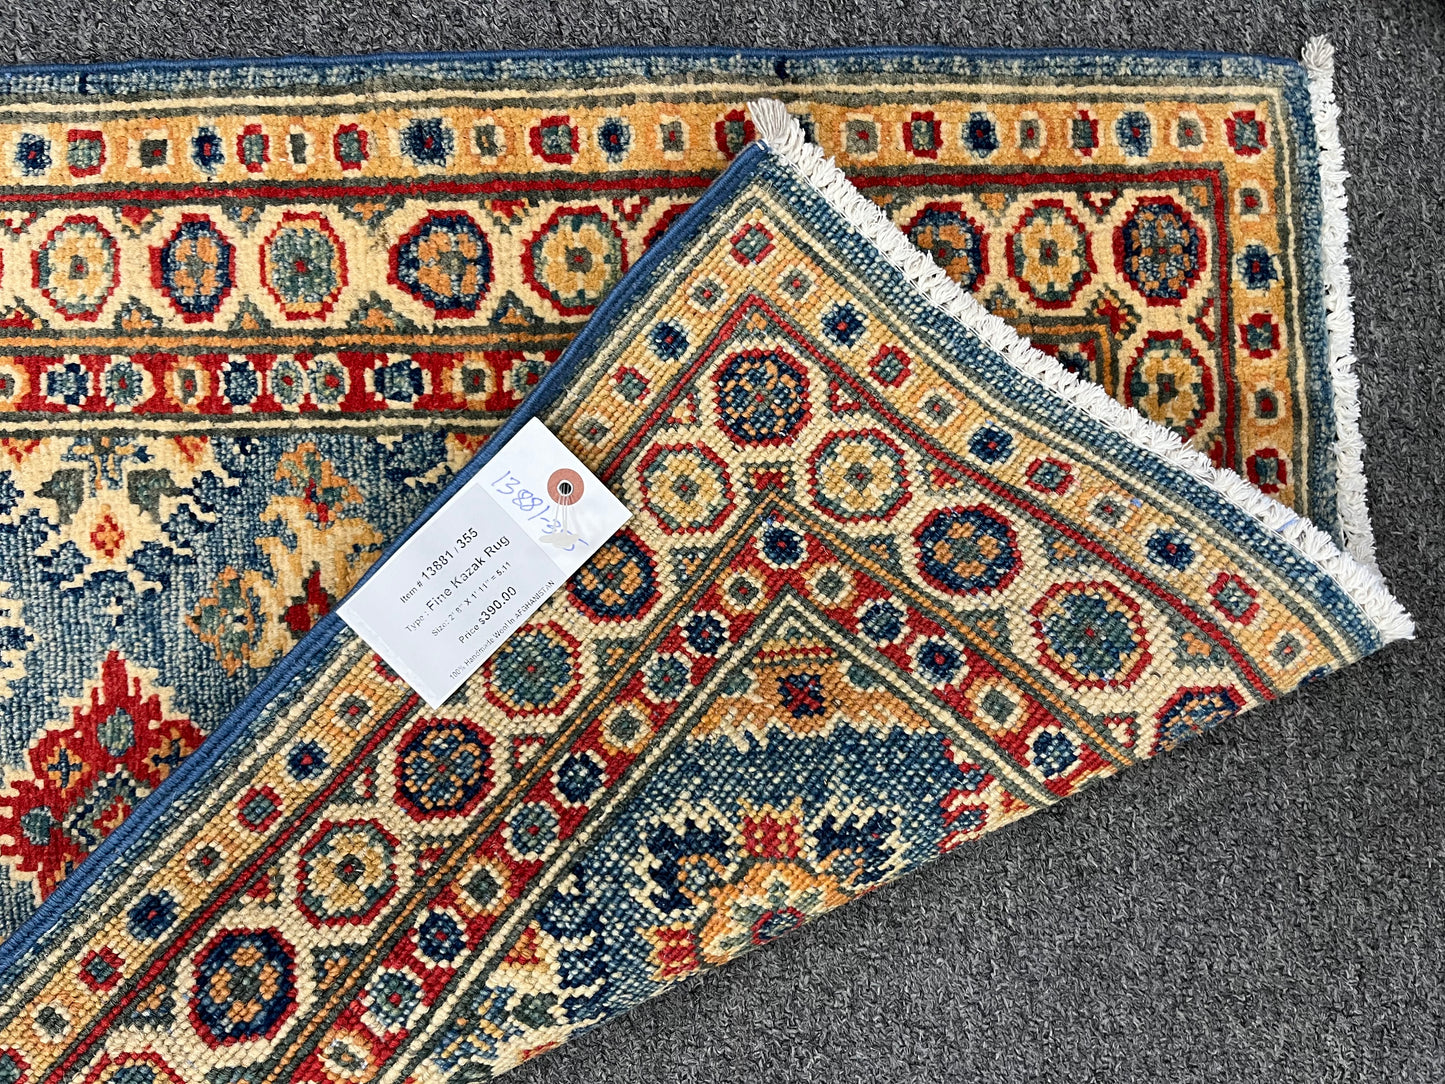 2X3 Blue Geometric Kazak Handmade Wool Rug # 13881